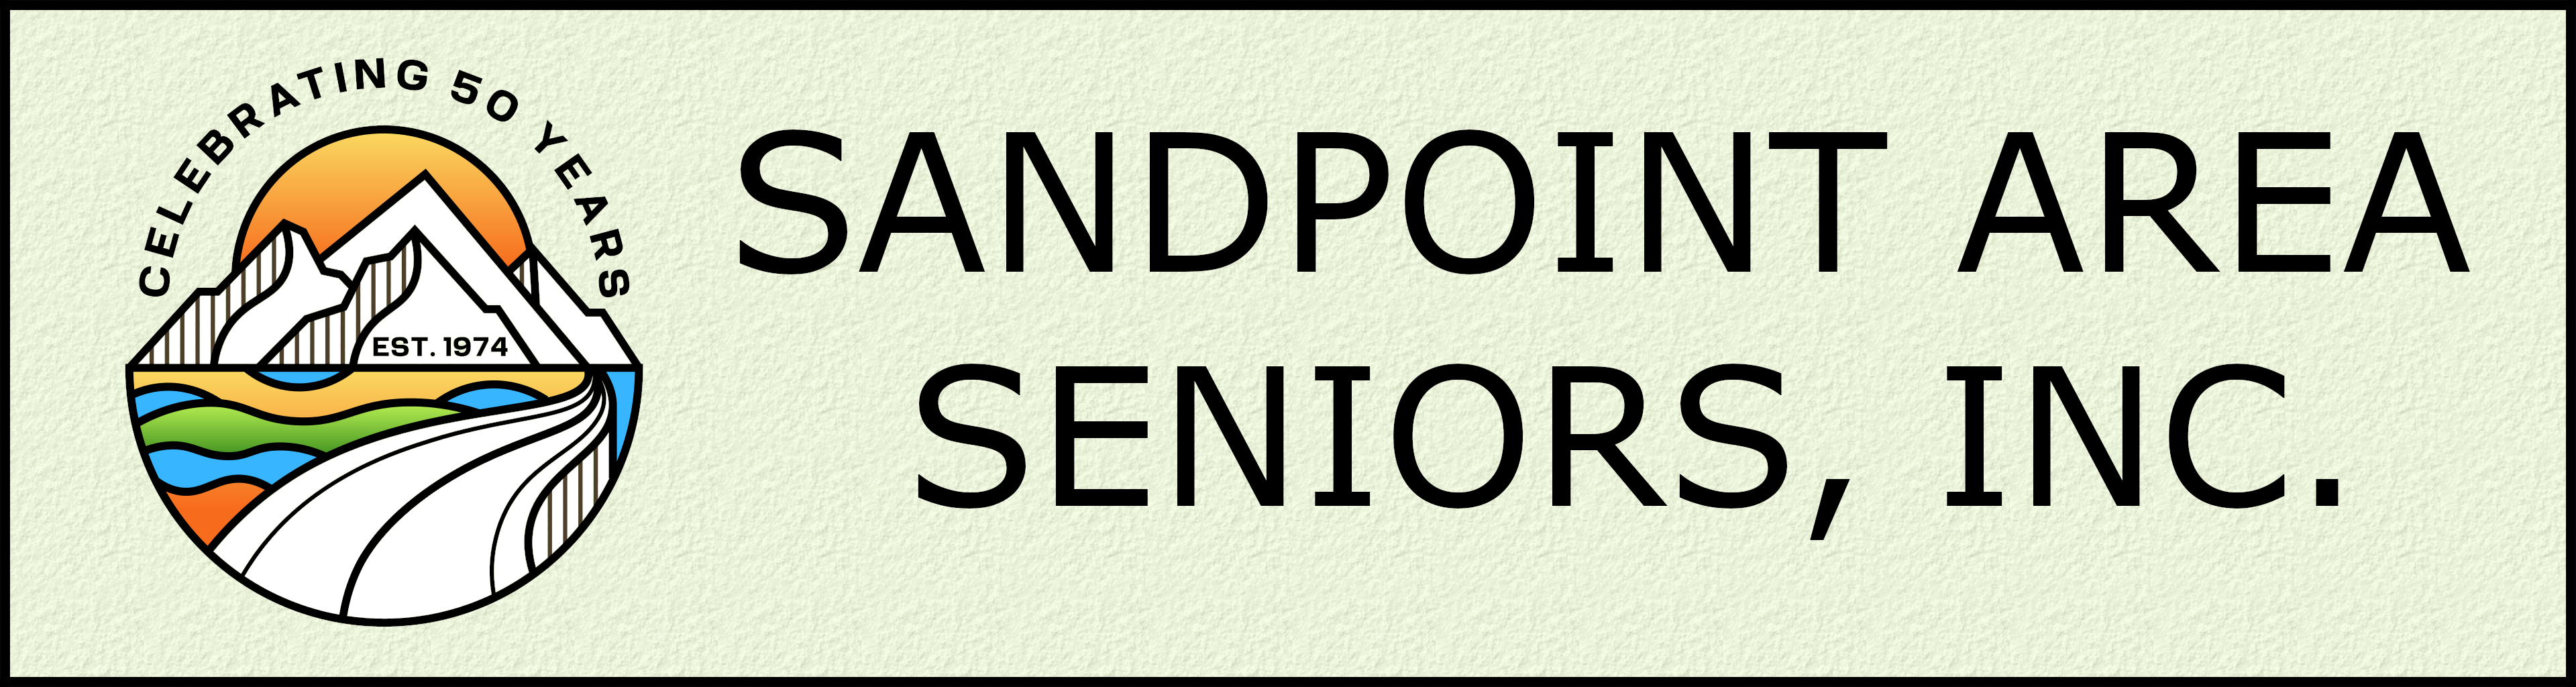 Sandpoint Area Seniors